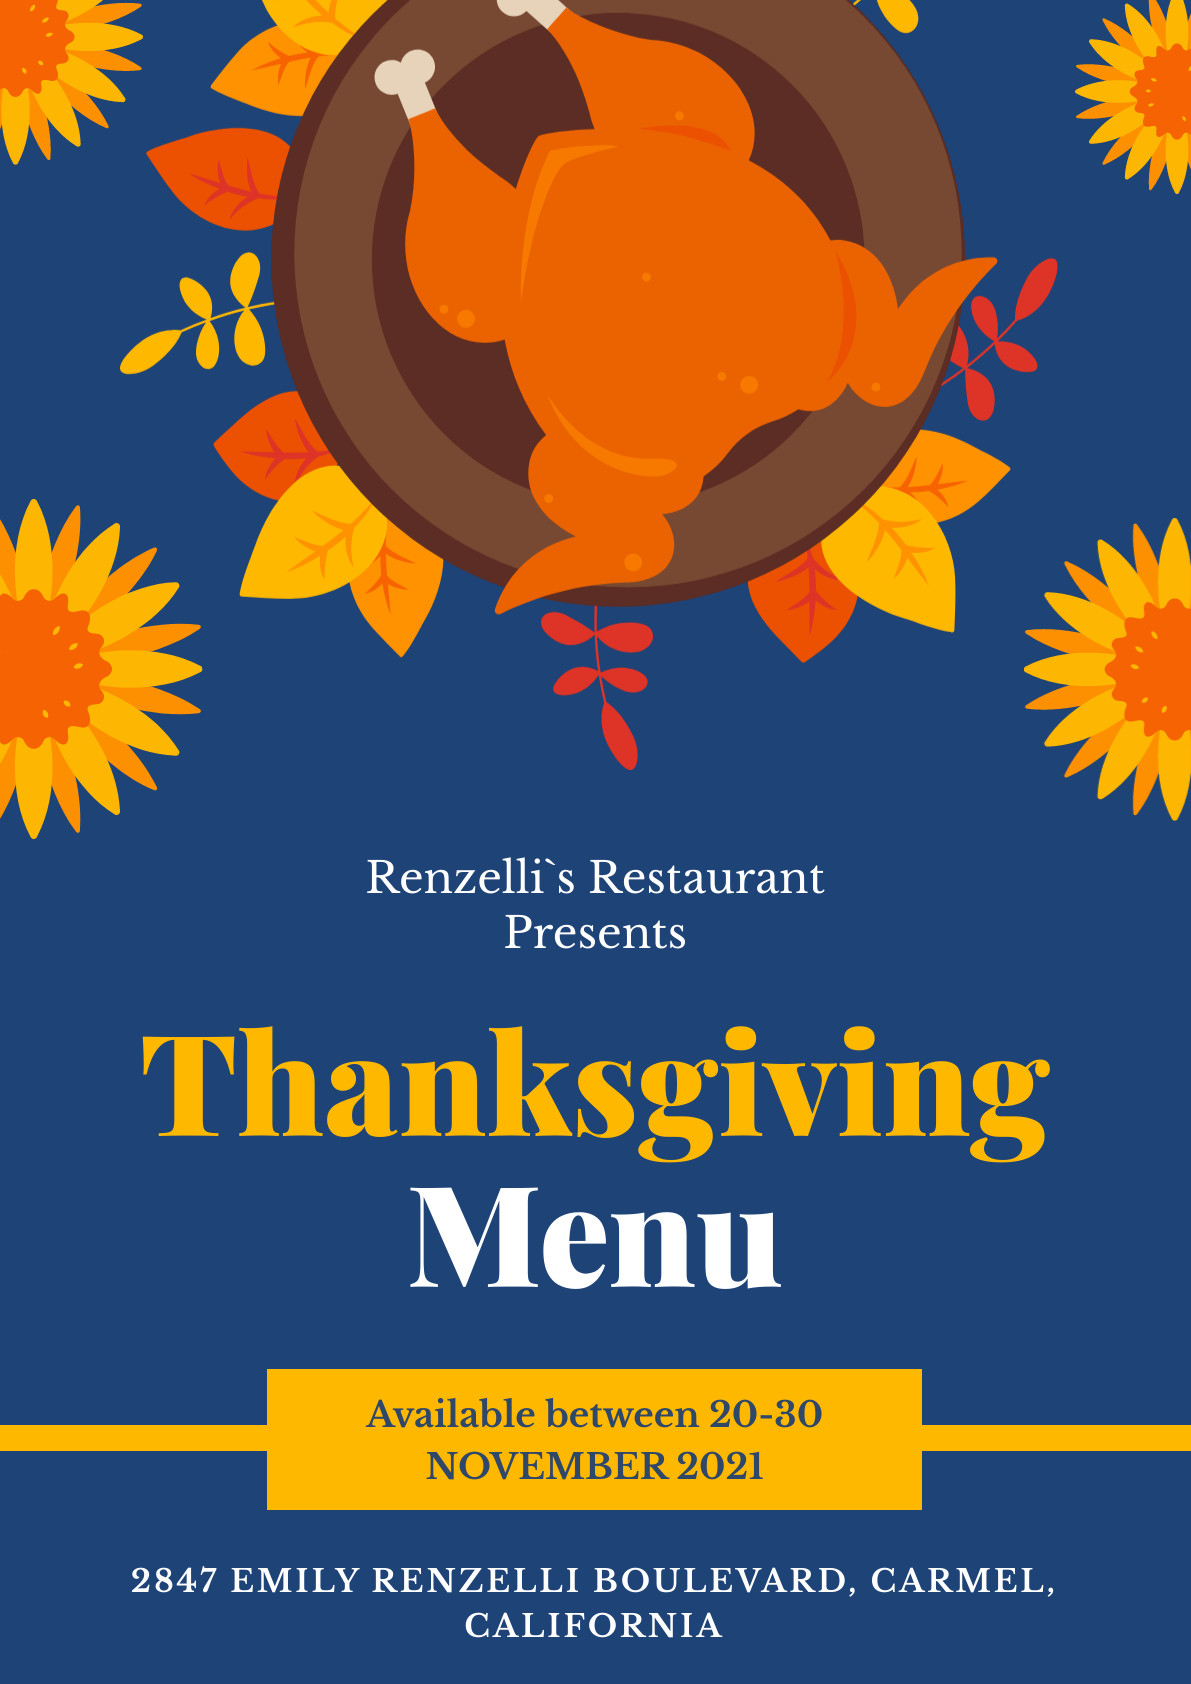 Renzelli Restaurant Thanksgiving Menu Poster